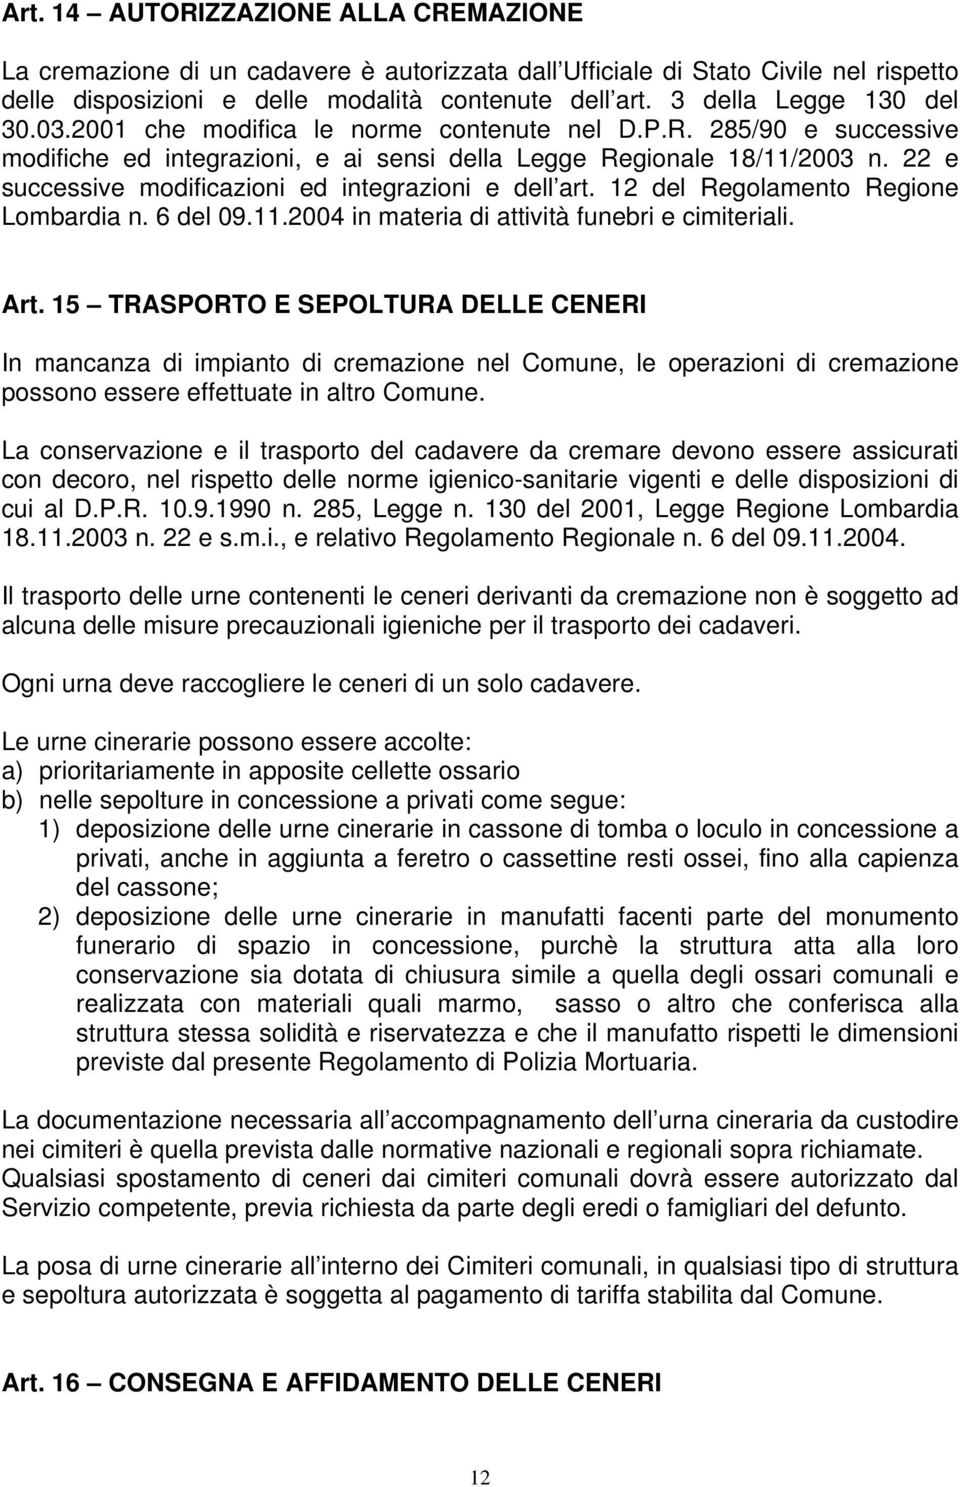 22 e successive modificazioni ed integrazioni e dell art. 12 del Regolamento Regione Lombardia n. 6 del 09.11.2004 in materia di attività funebri e cimiteriali. Art.